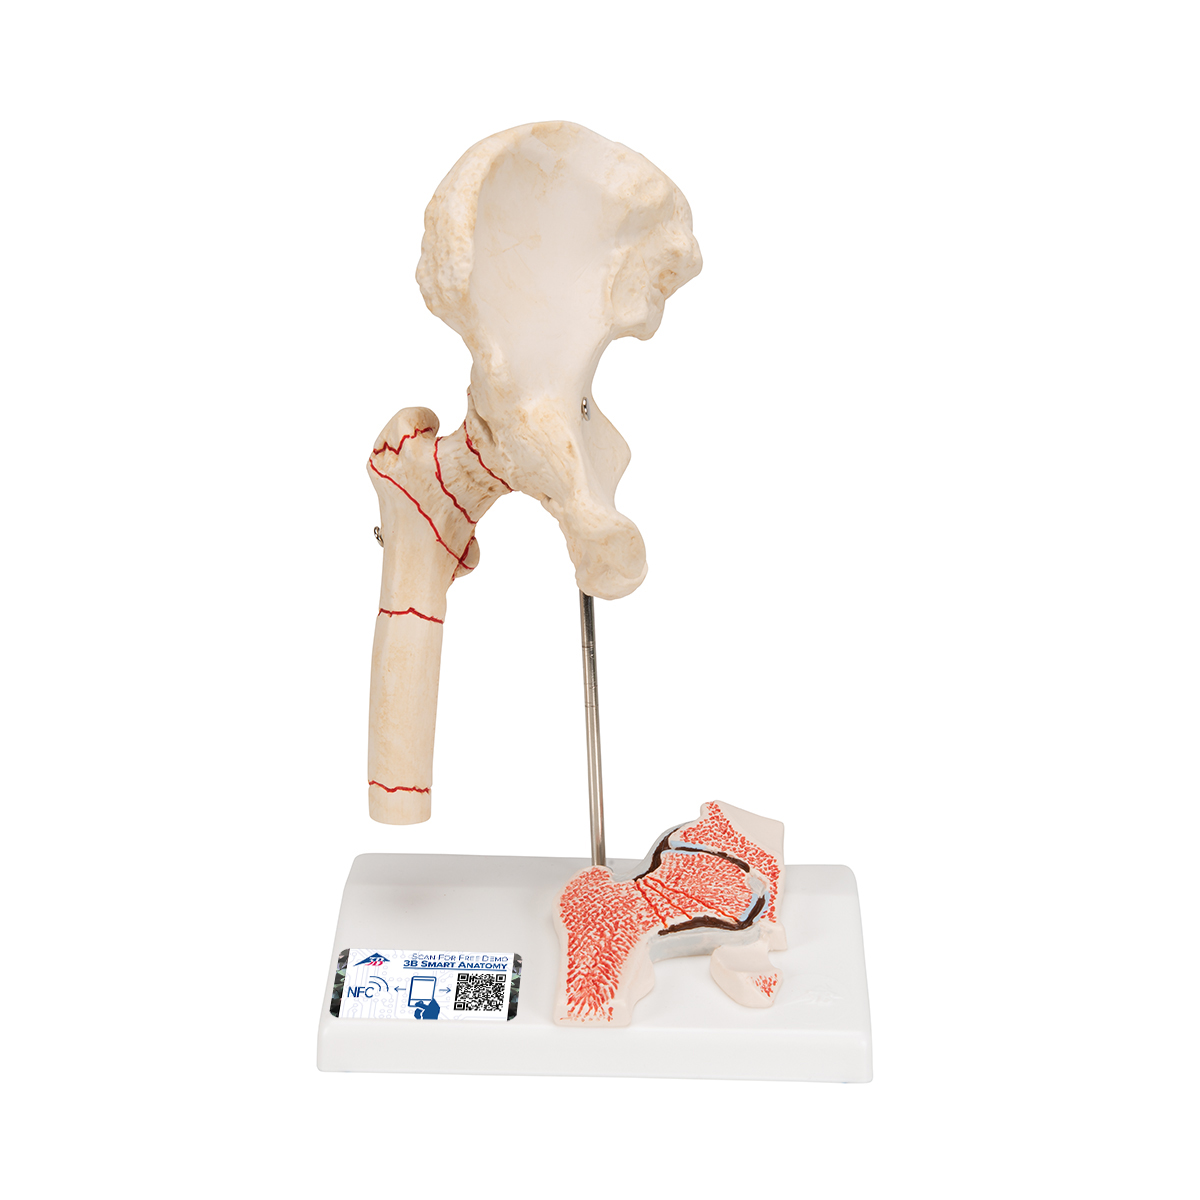 Hüftgelenkmodell mit Oberschenkelbruch & Hüftgelenkverschleiß - 3B Smart Anatomy, Bestellnummer 1000175, A88, 3B Scientific